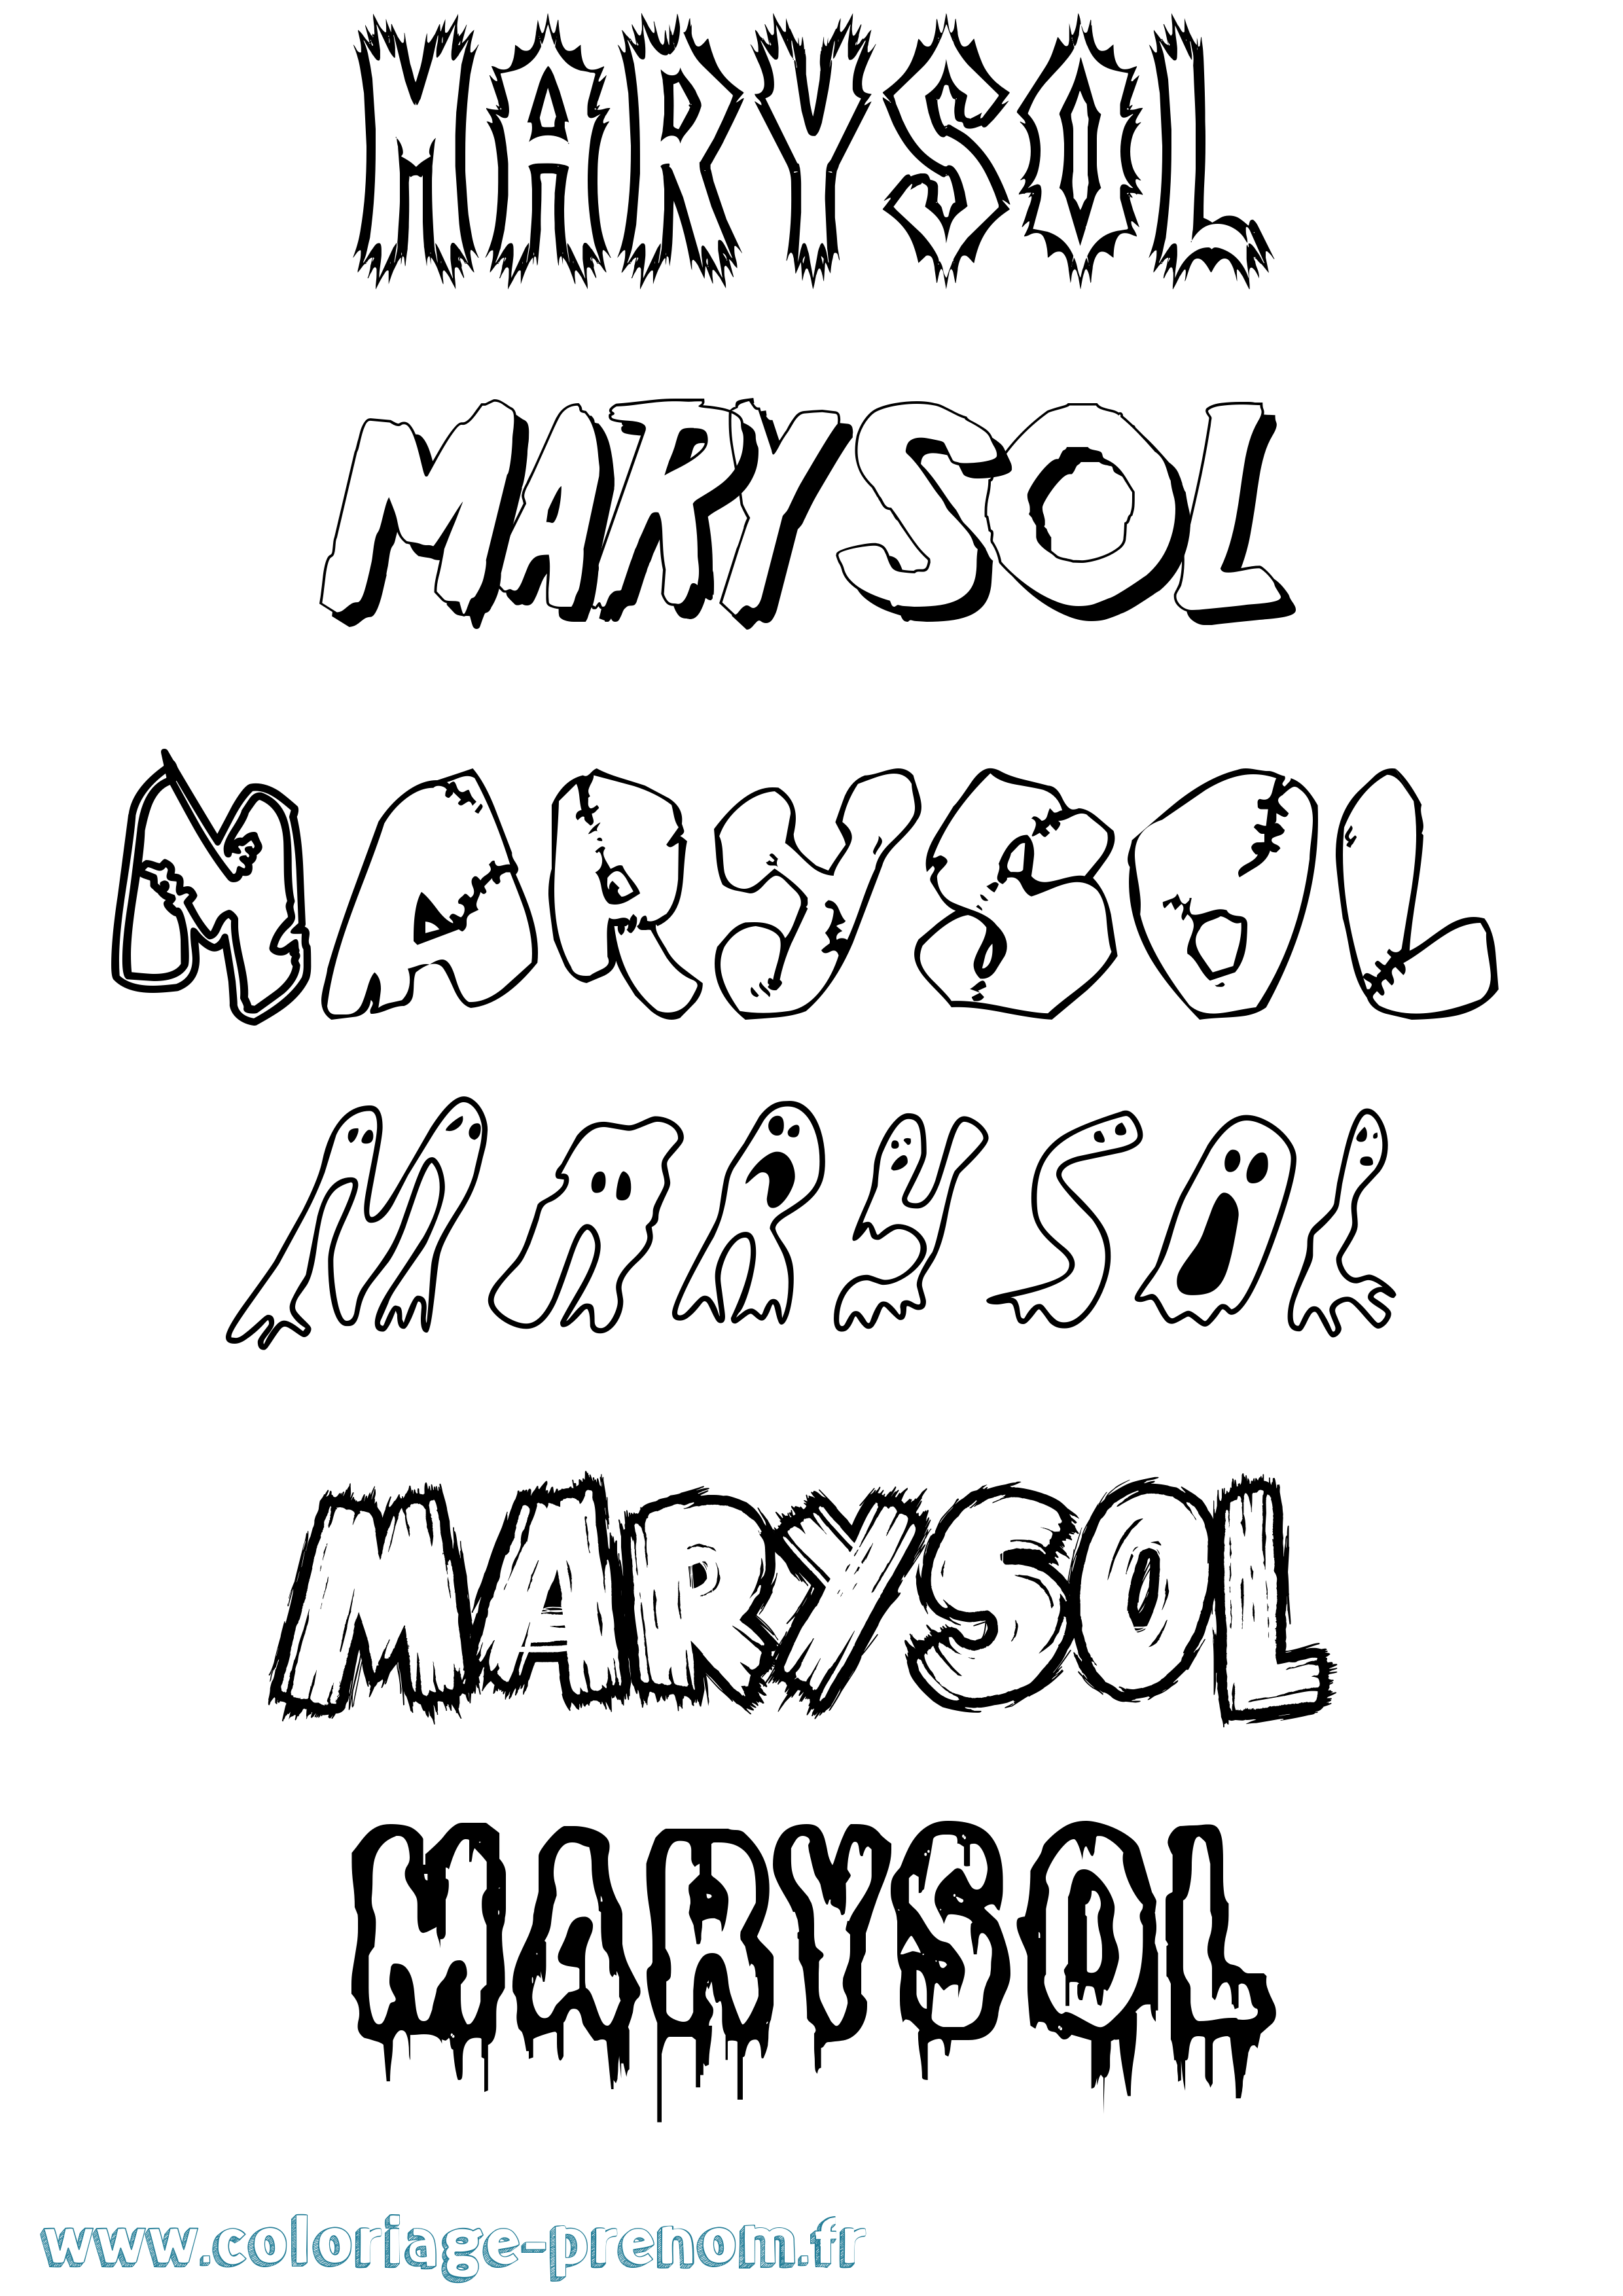 Coloriage prénom Marysol Frisson